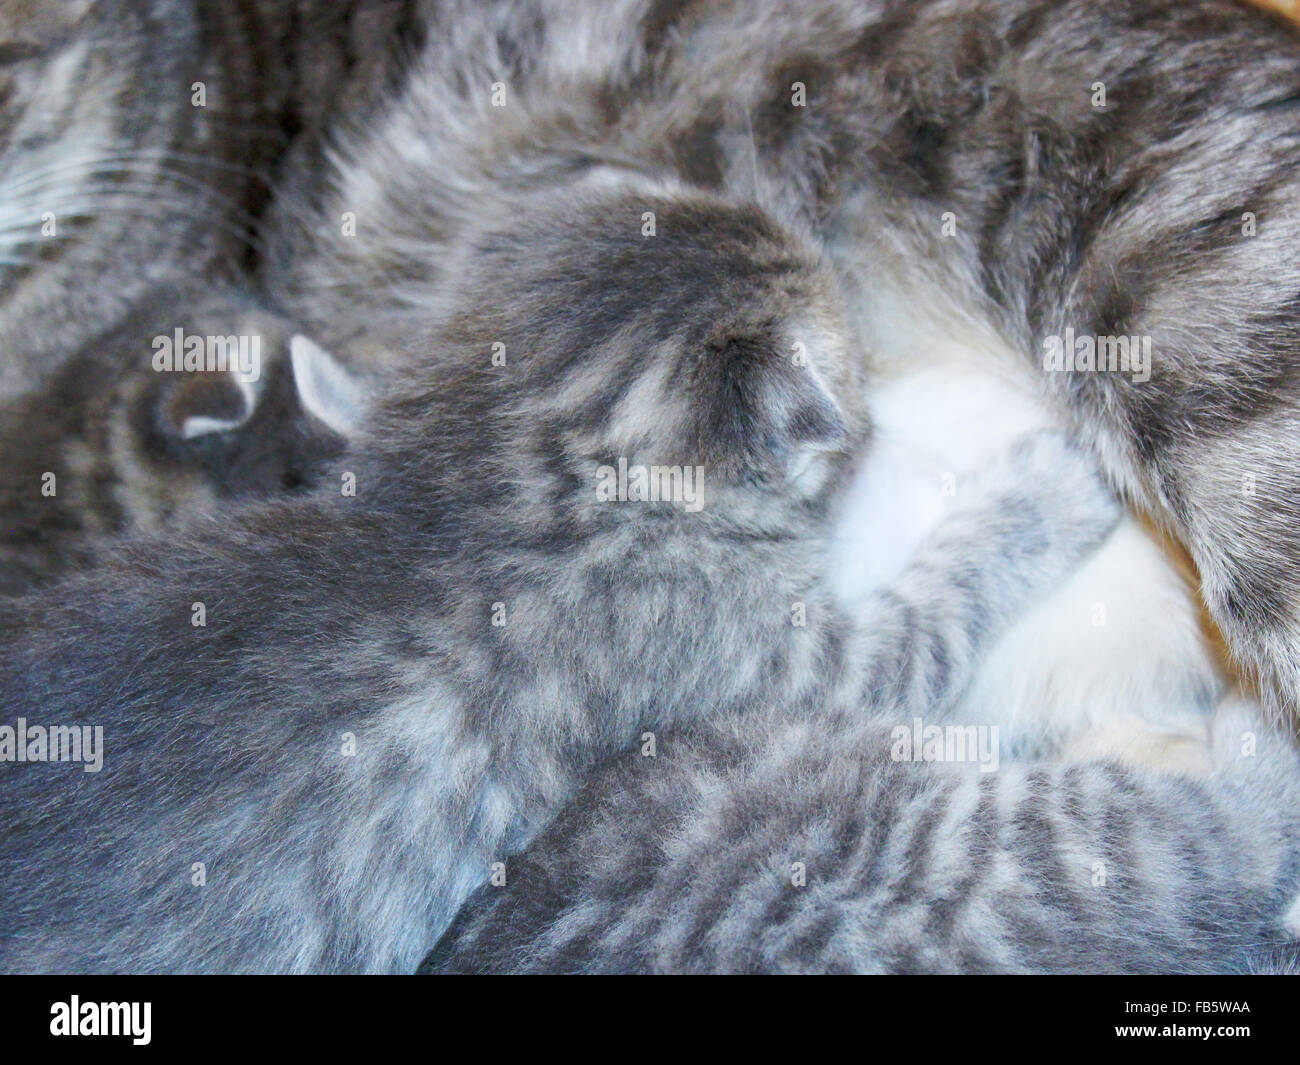 cat and her newborn kittens of Scottish Straight breed Stock Photo